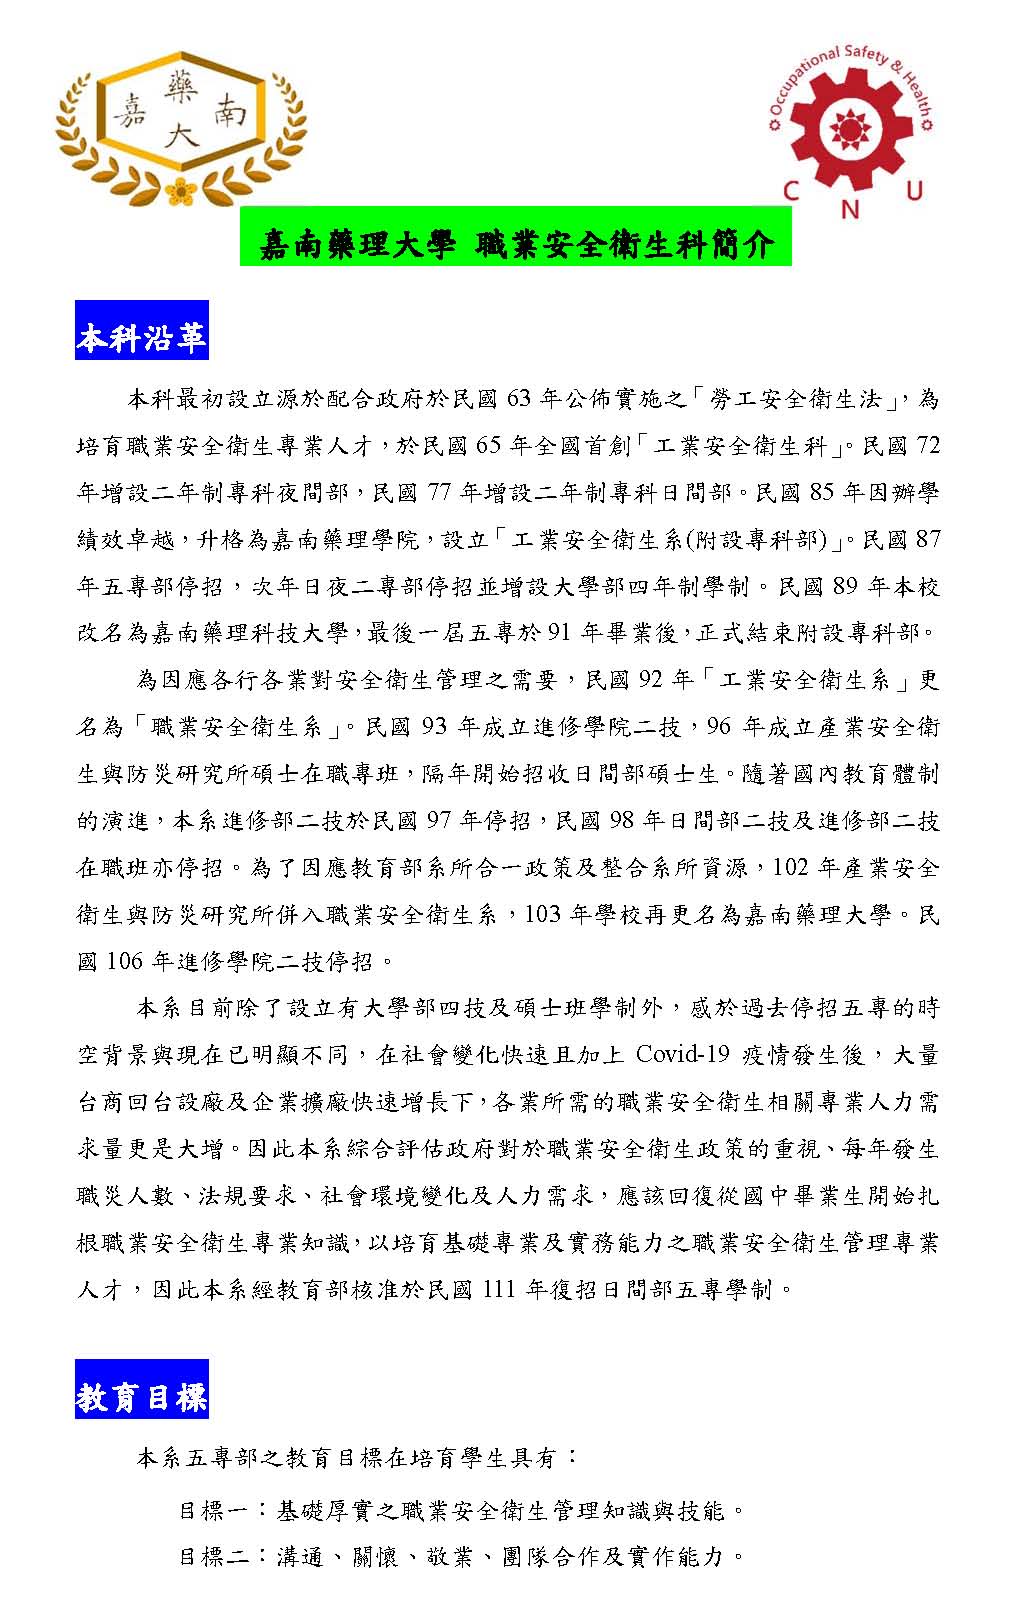 嘉南藥理大學職業安全衛生科簡介（中文）_頁面_1